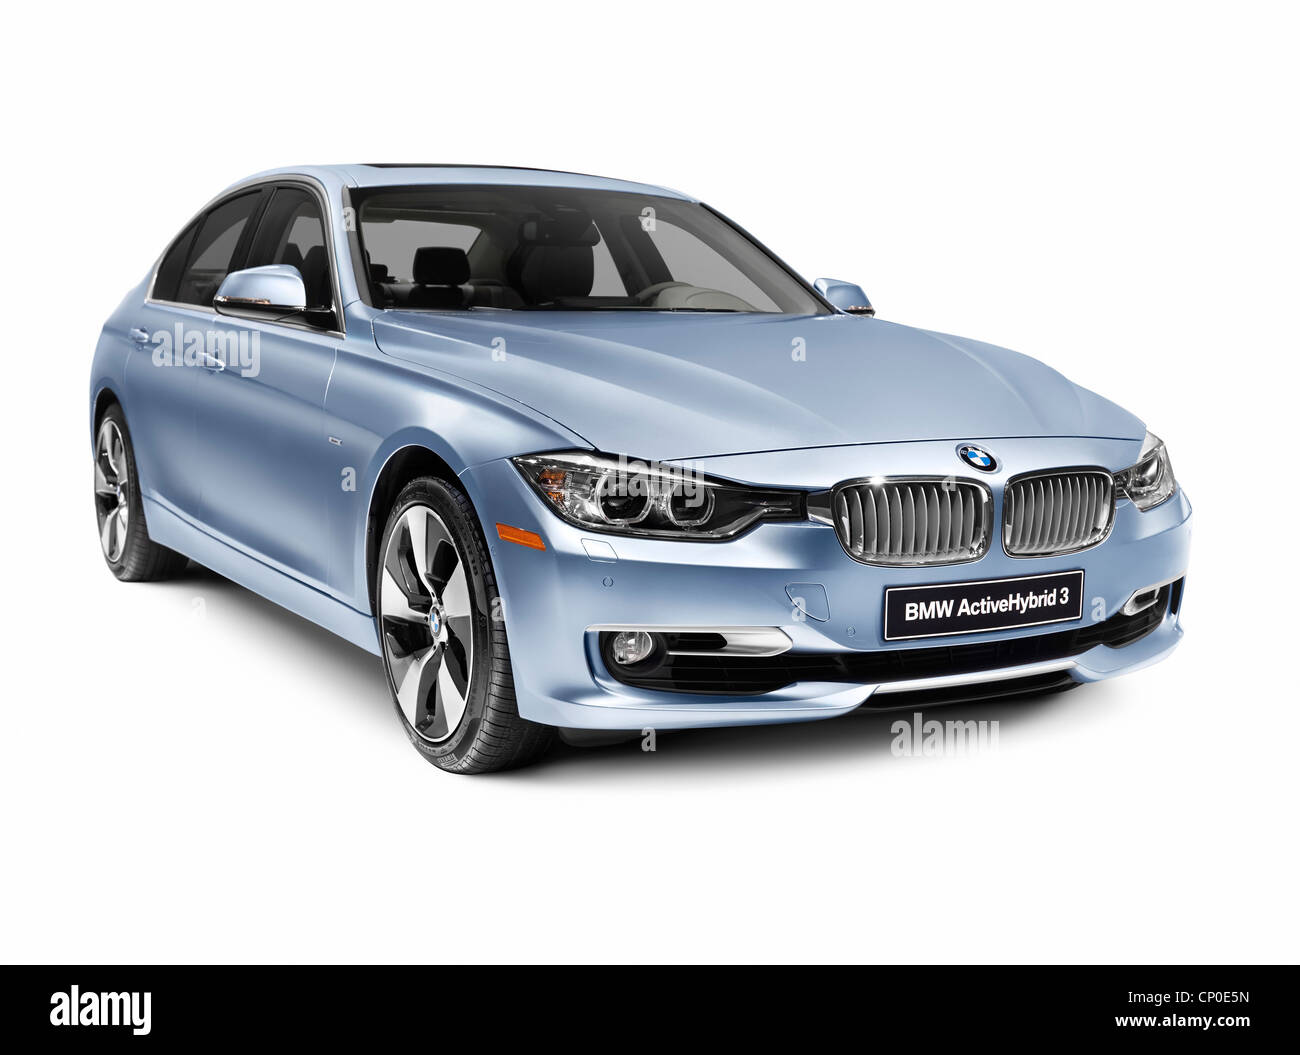 Licence et tirages sur MaximImages.com - BMW voiture de luxe, photo de stock automobile. Banque D'Images